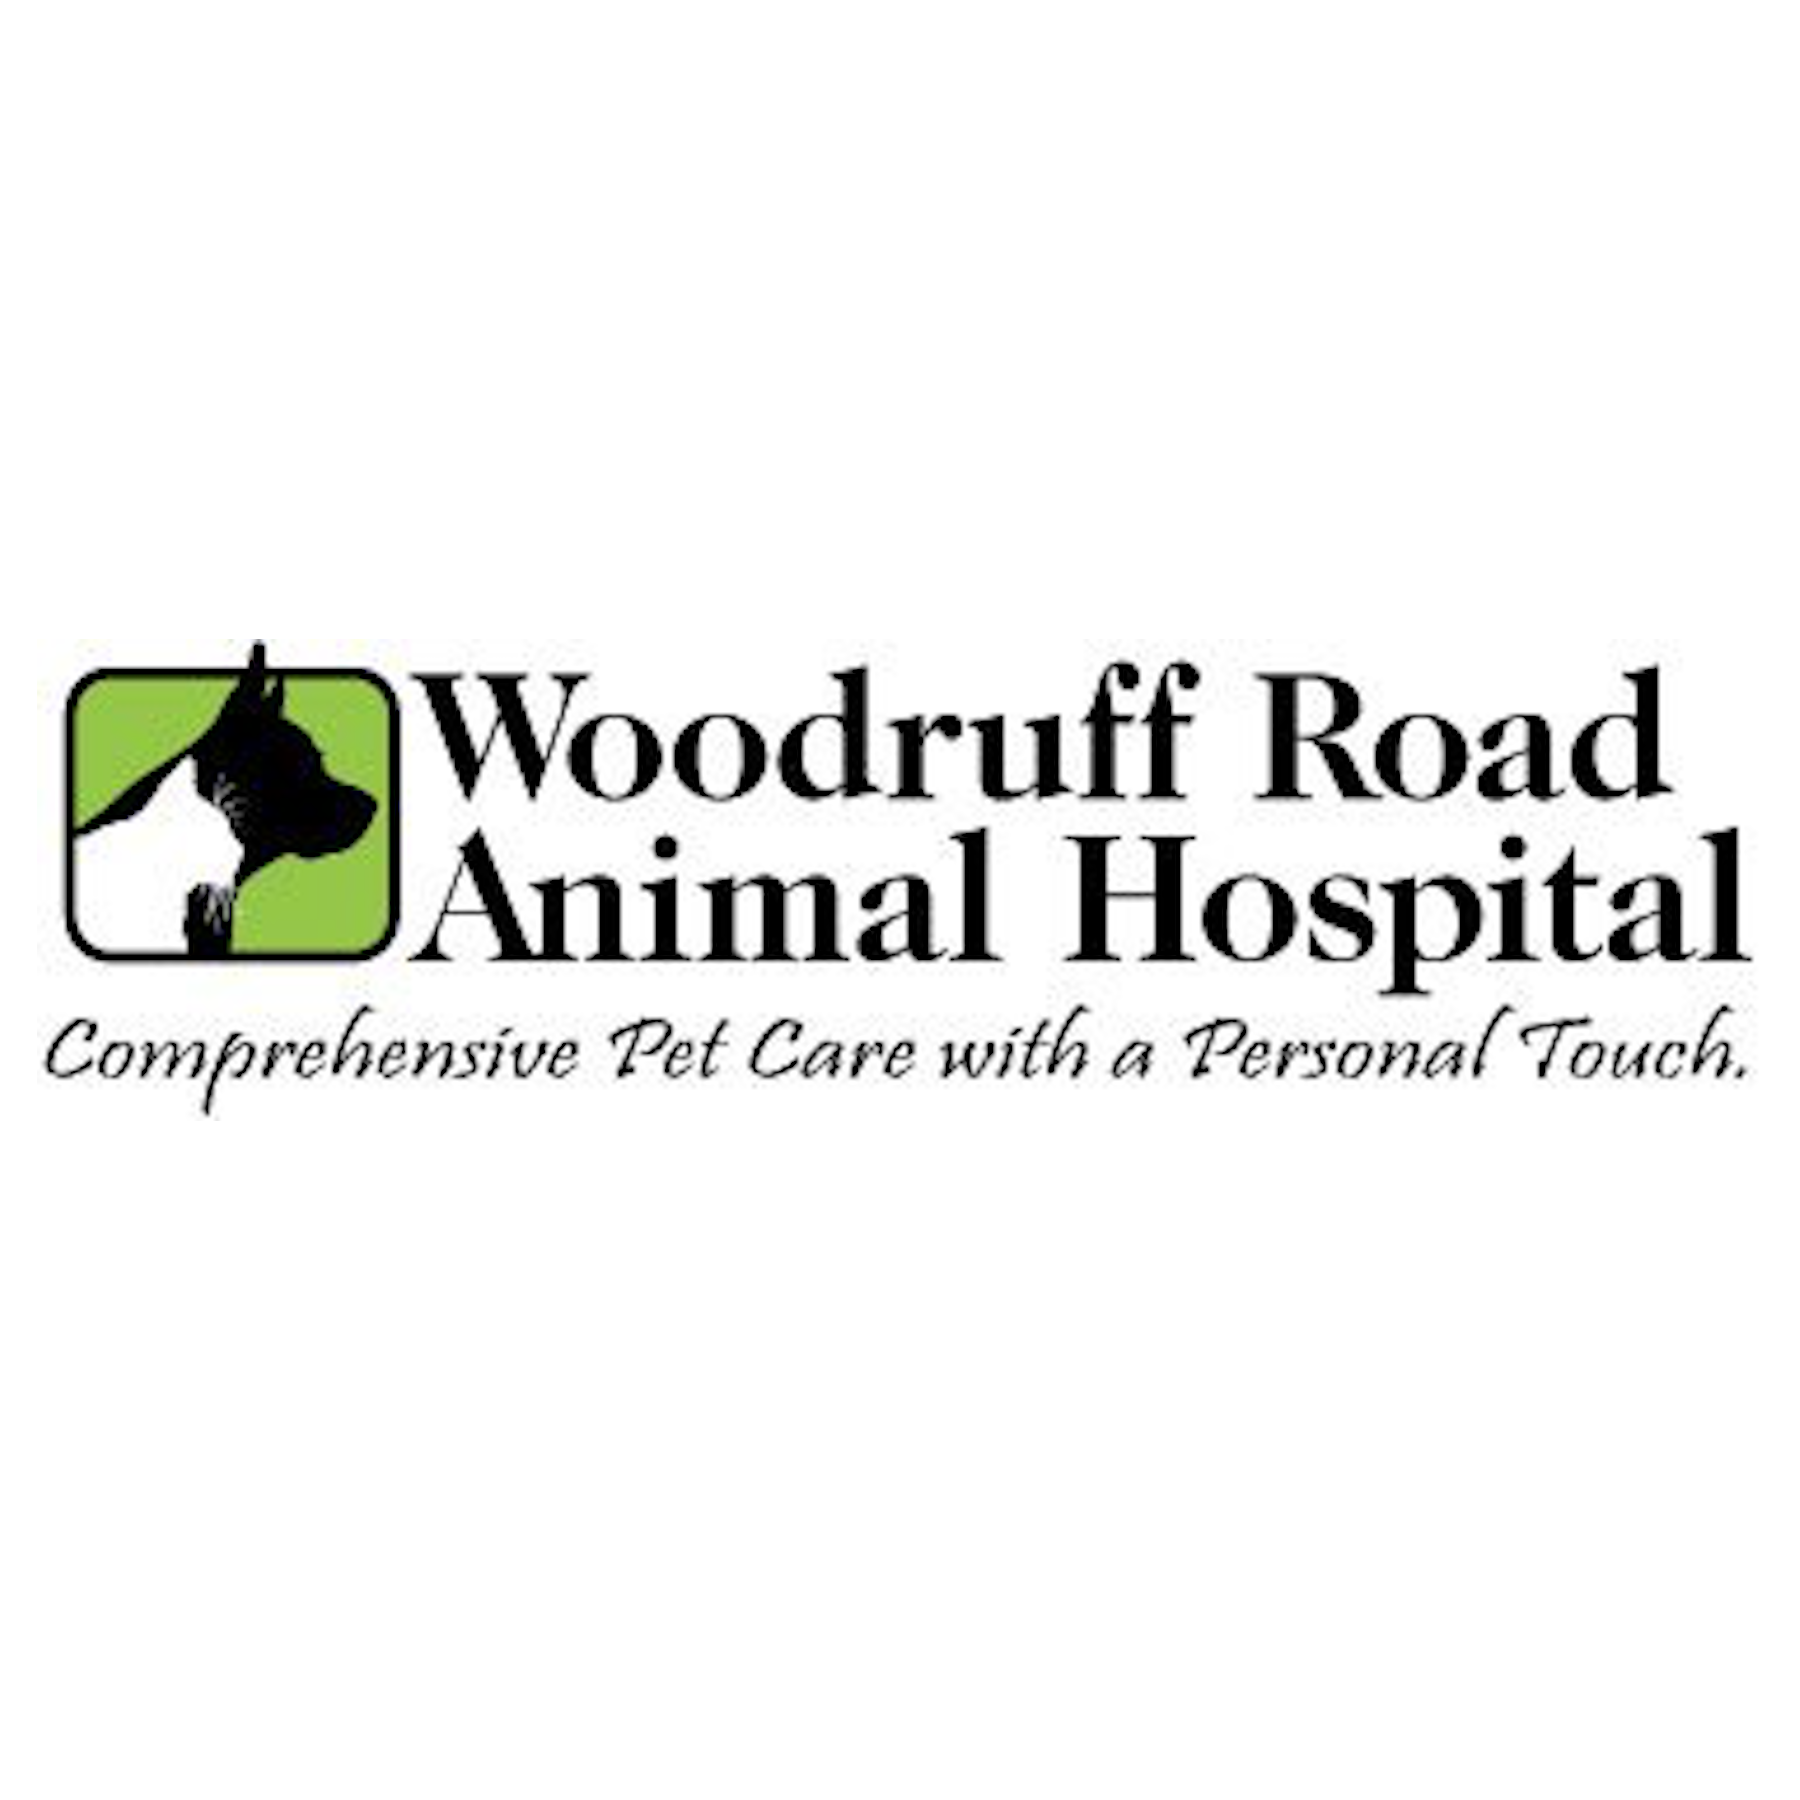 Woodruff Road Animal Hospital